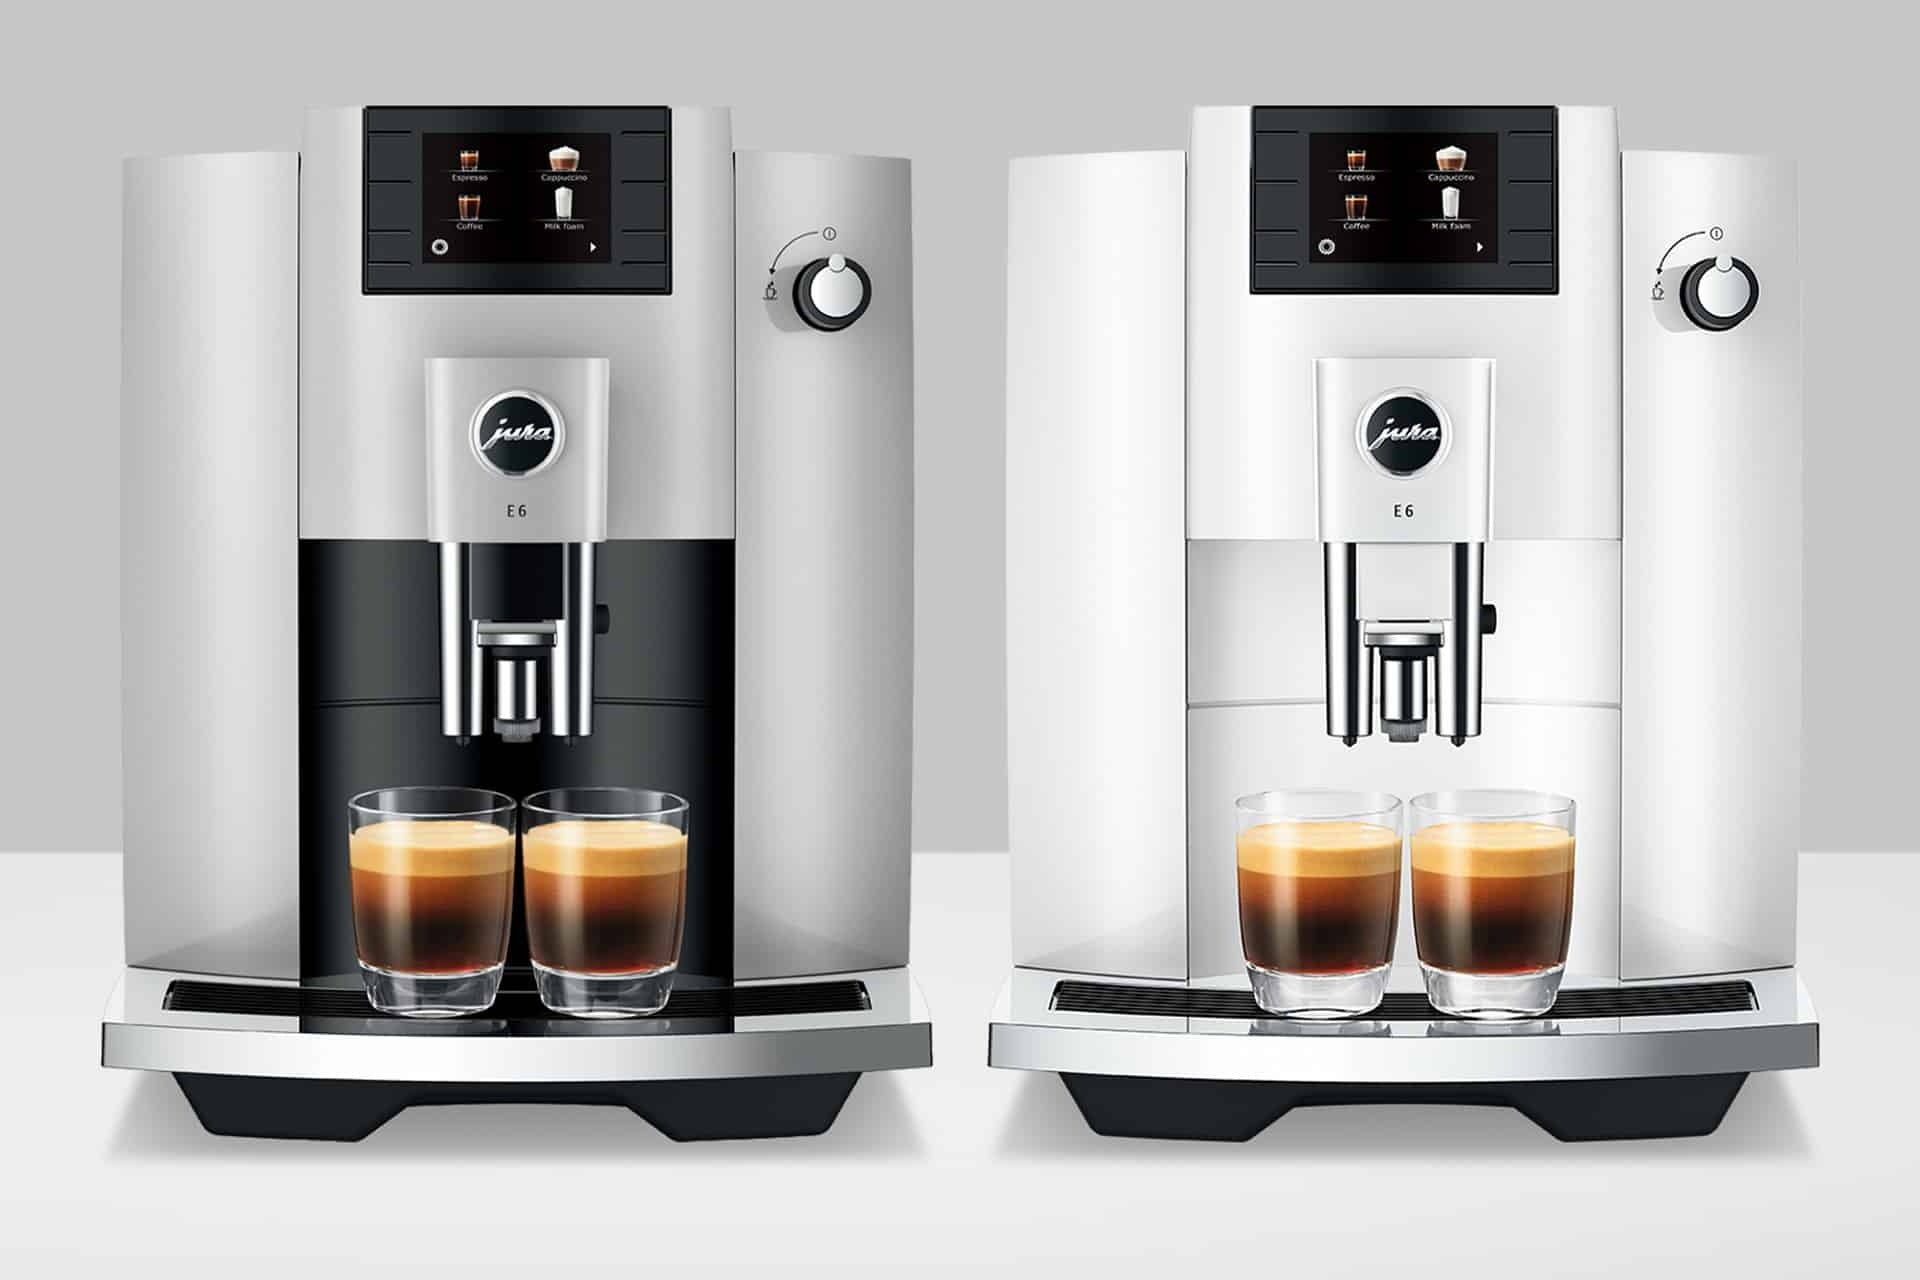 How to Use the New Jura E6 Super Automatic Espresso Machine